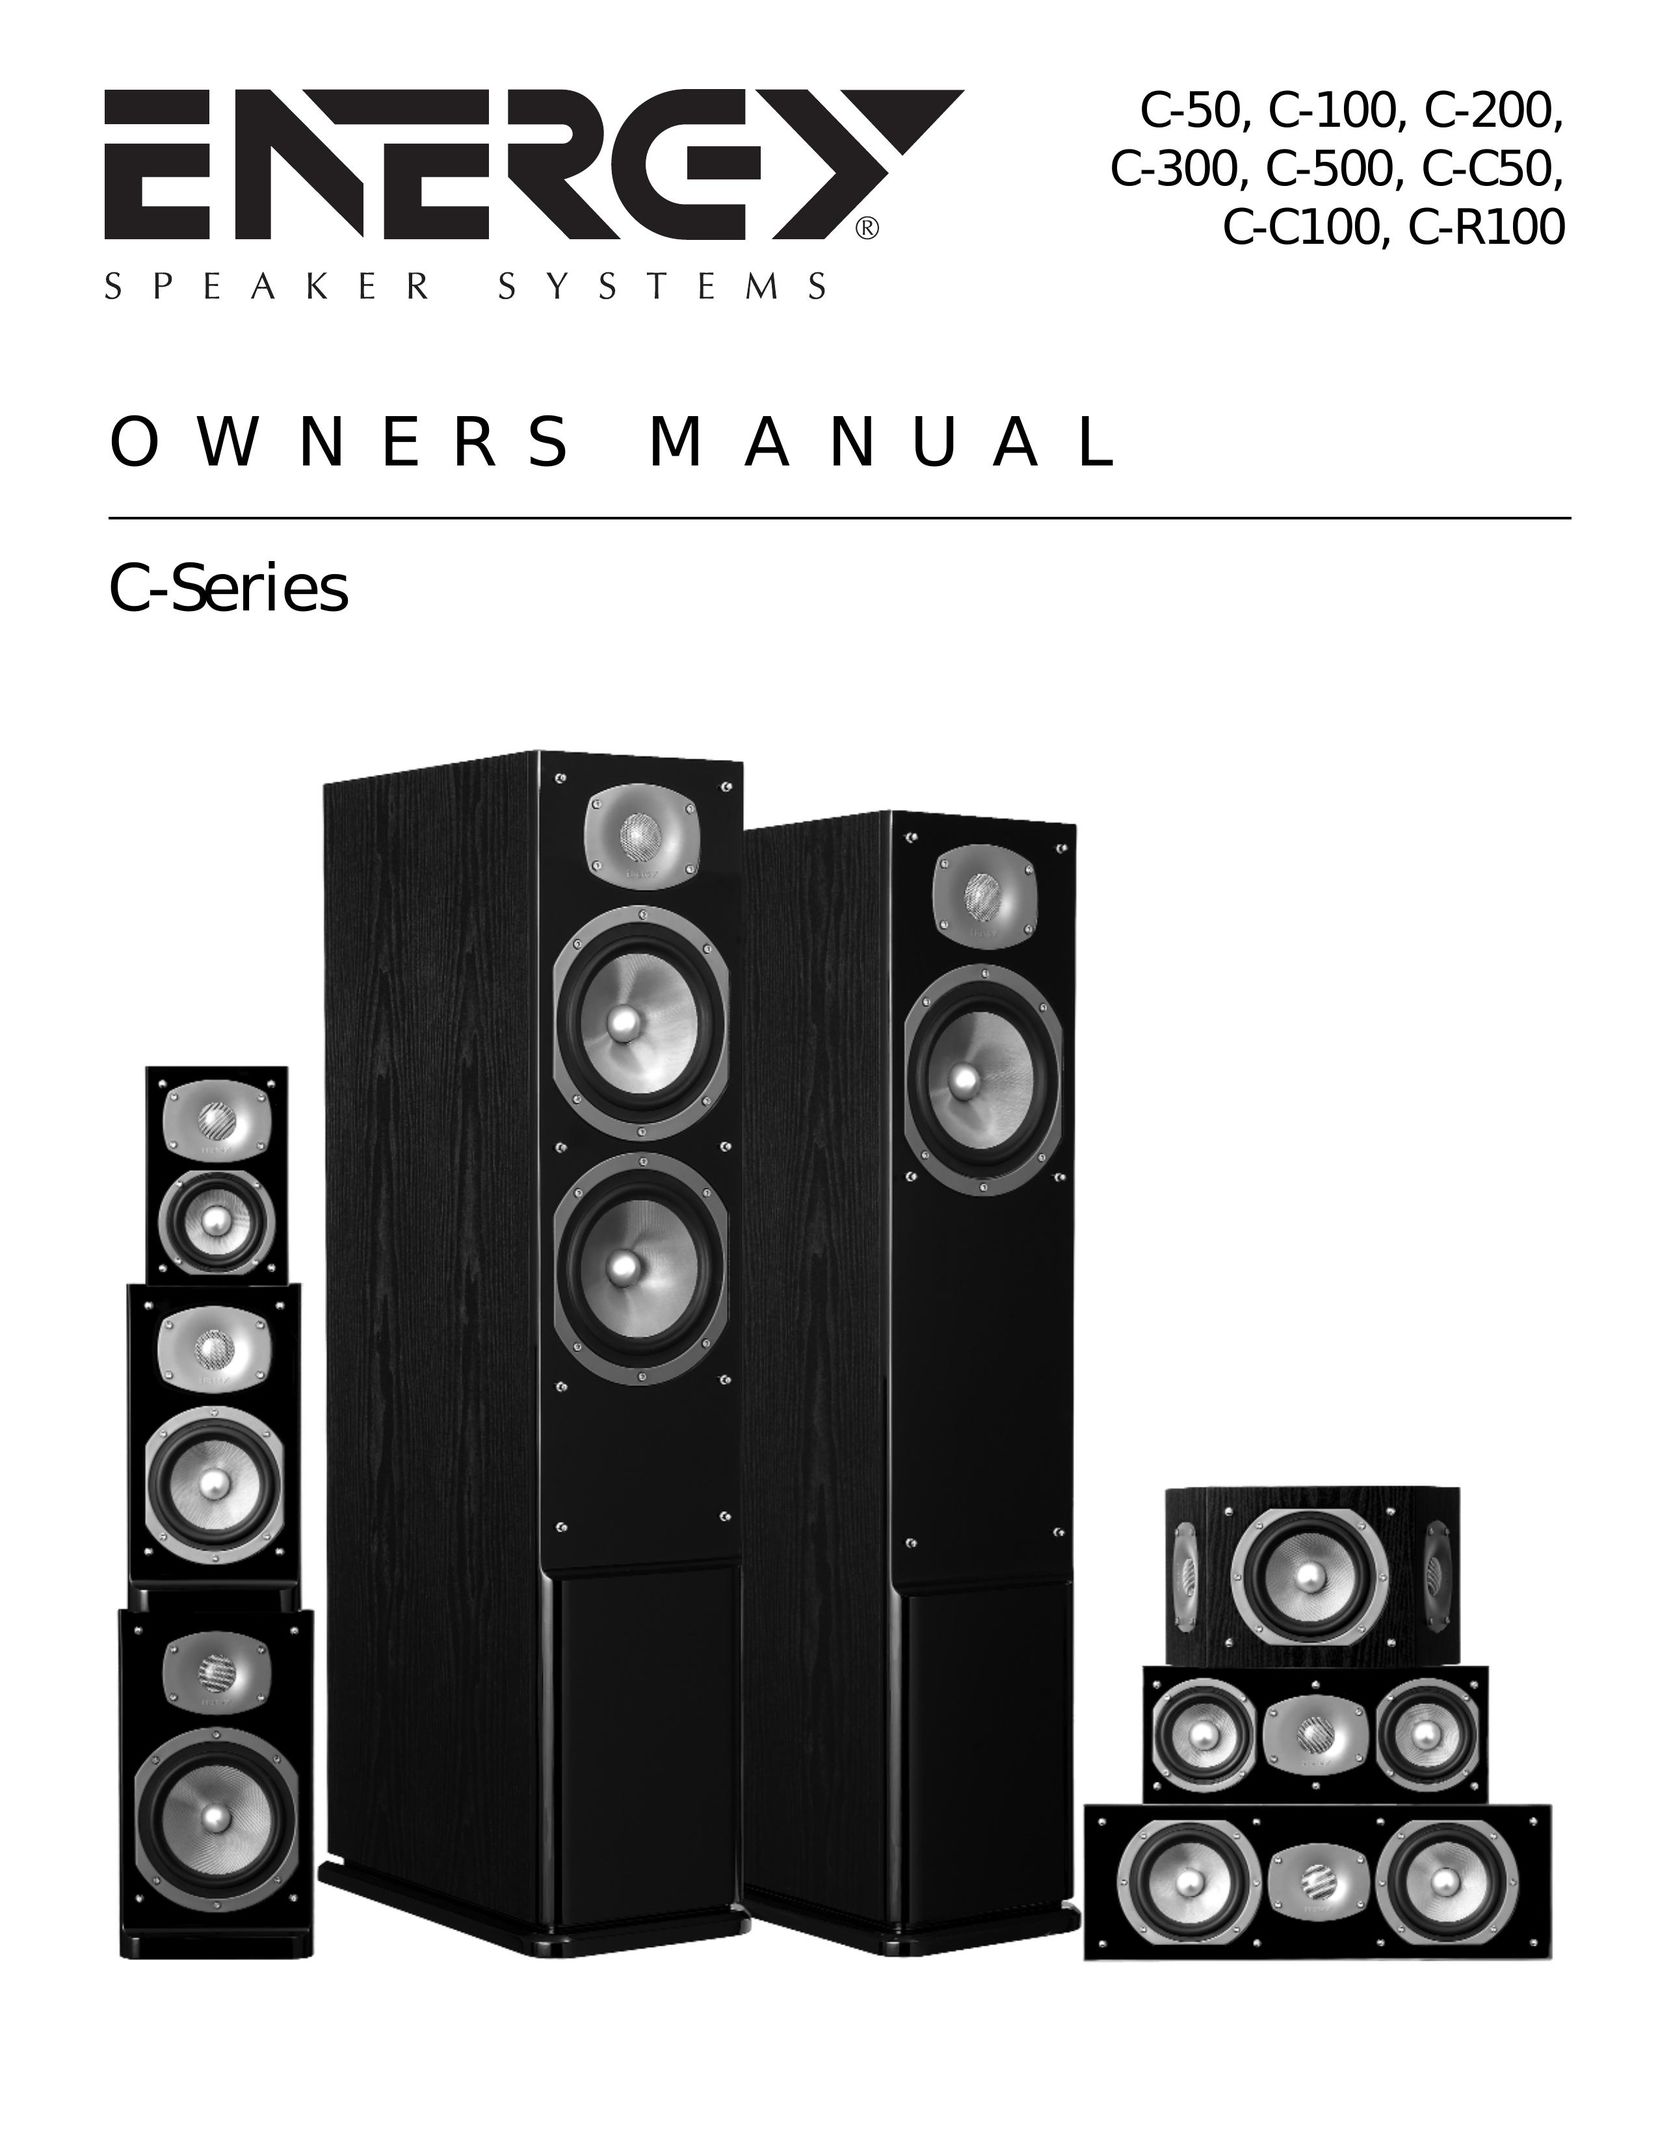 Energy Speaker Systems C-C100 Speaker User Manual